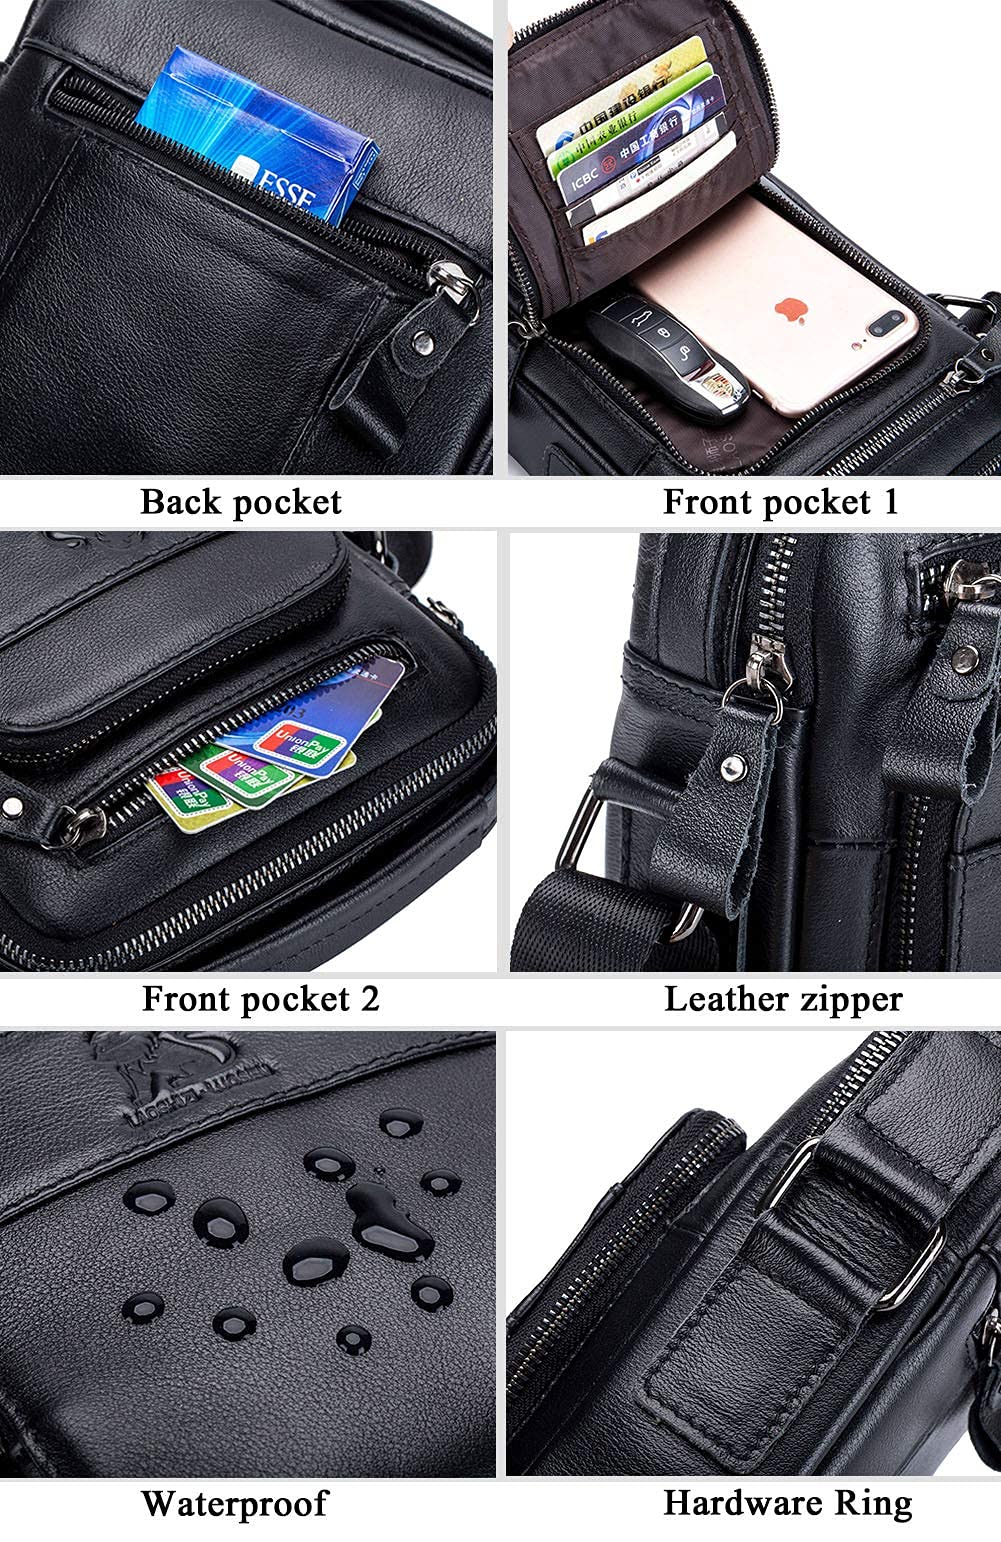 Men's Genuine Leather Shoulder Bag Messenger Briefcase CrossBody Handbag Satchel Travel bag, black